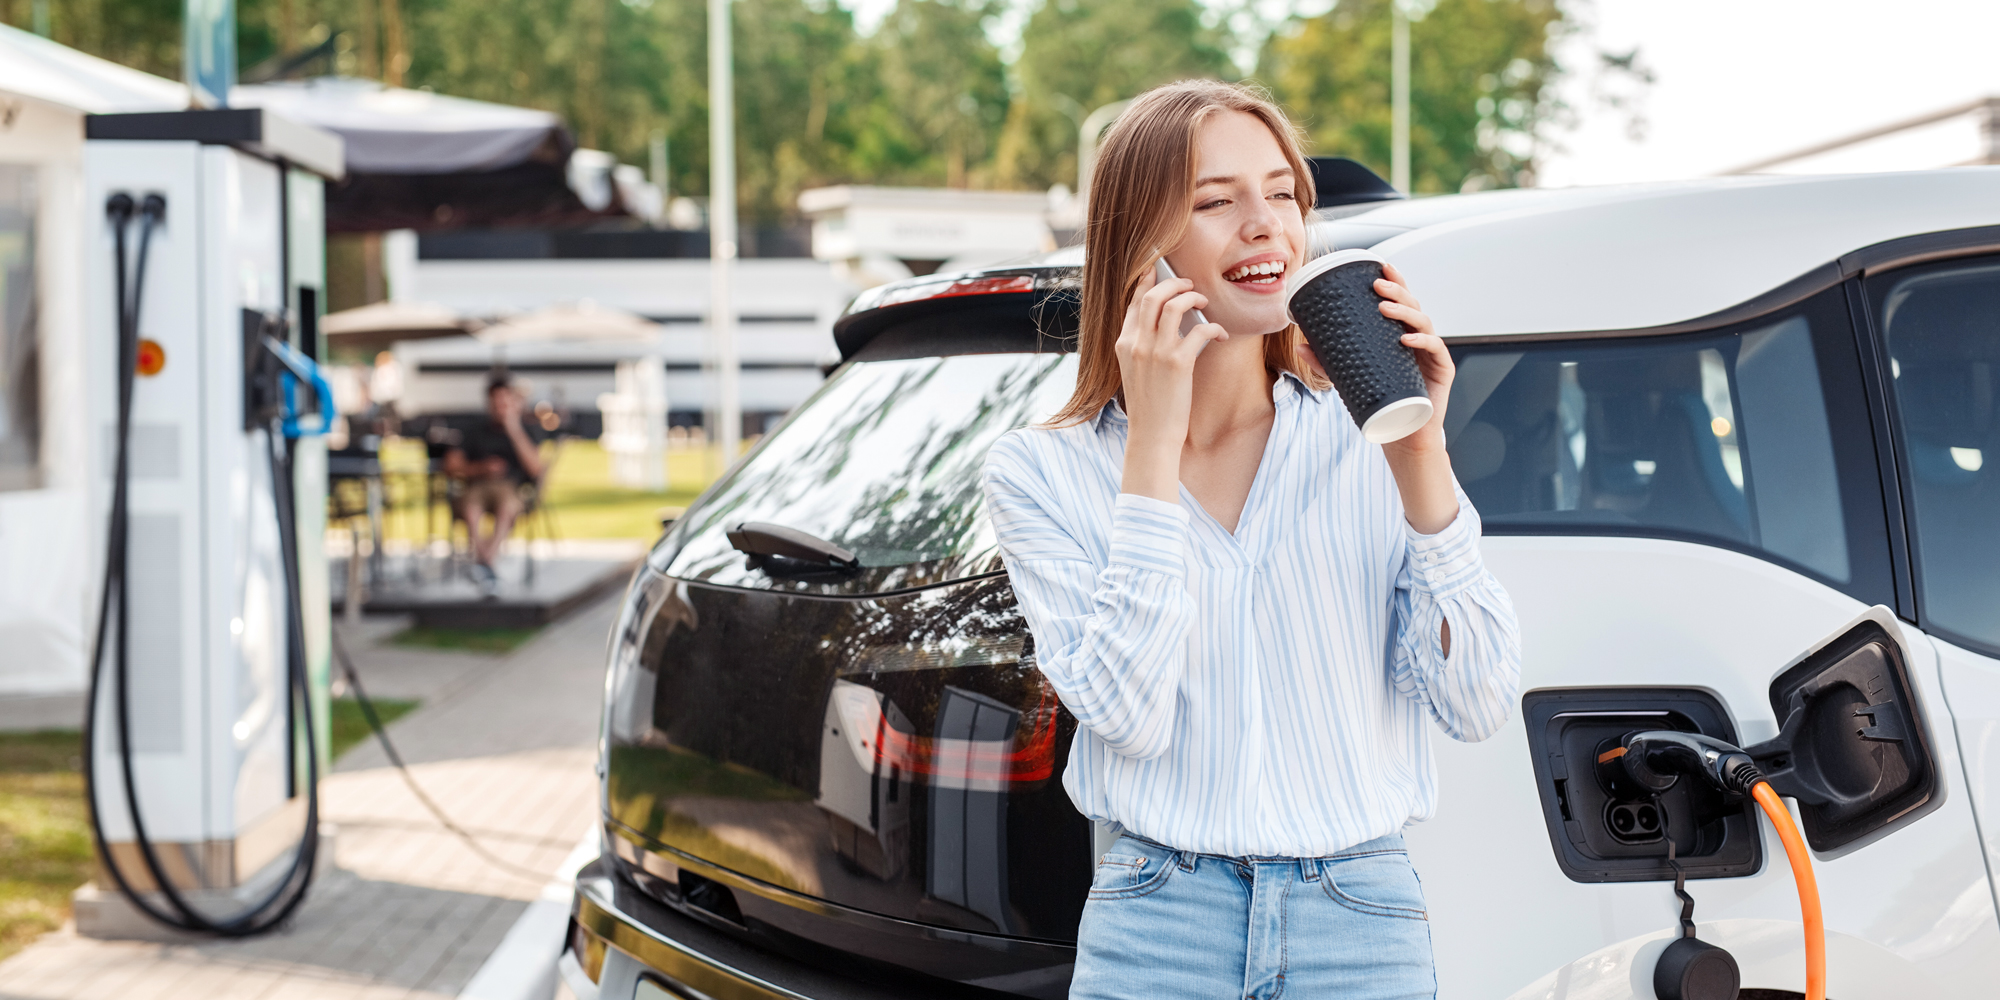 Billede af kvinde, som er i gang med at oplade sin elbil ved en rasteplads, mens hun snakker i telefon og drikker en kop kaffe.